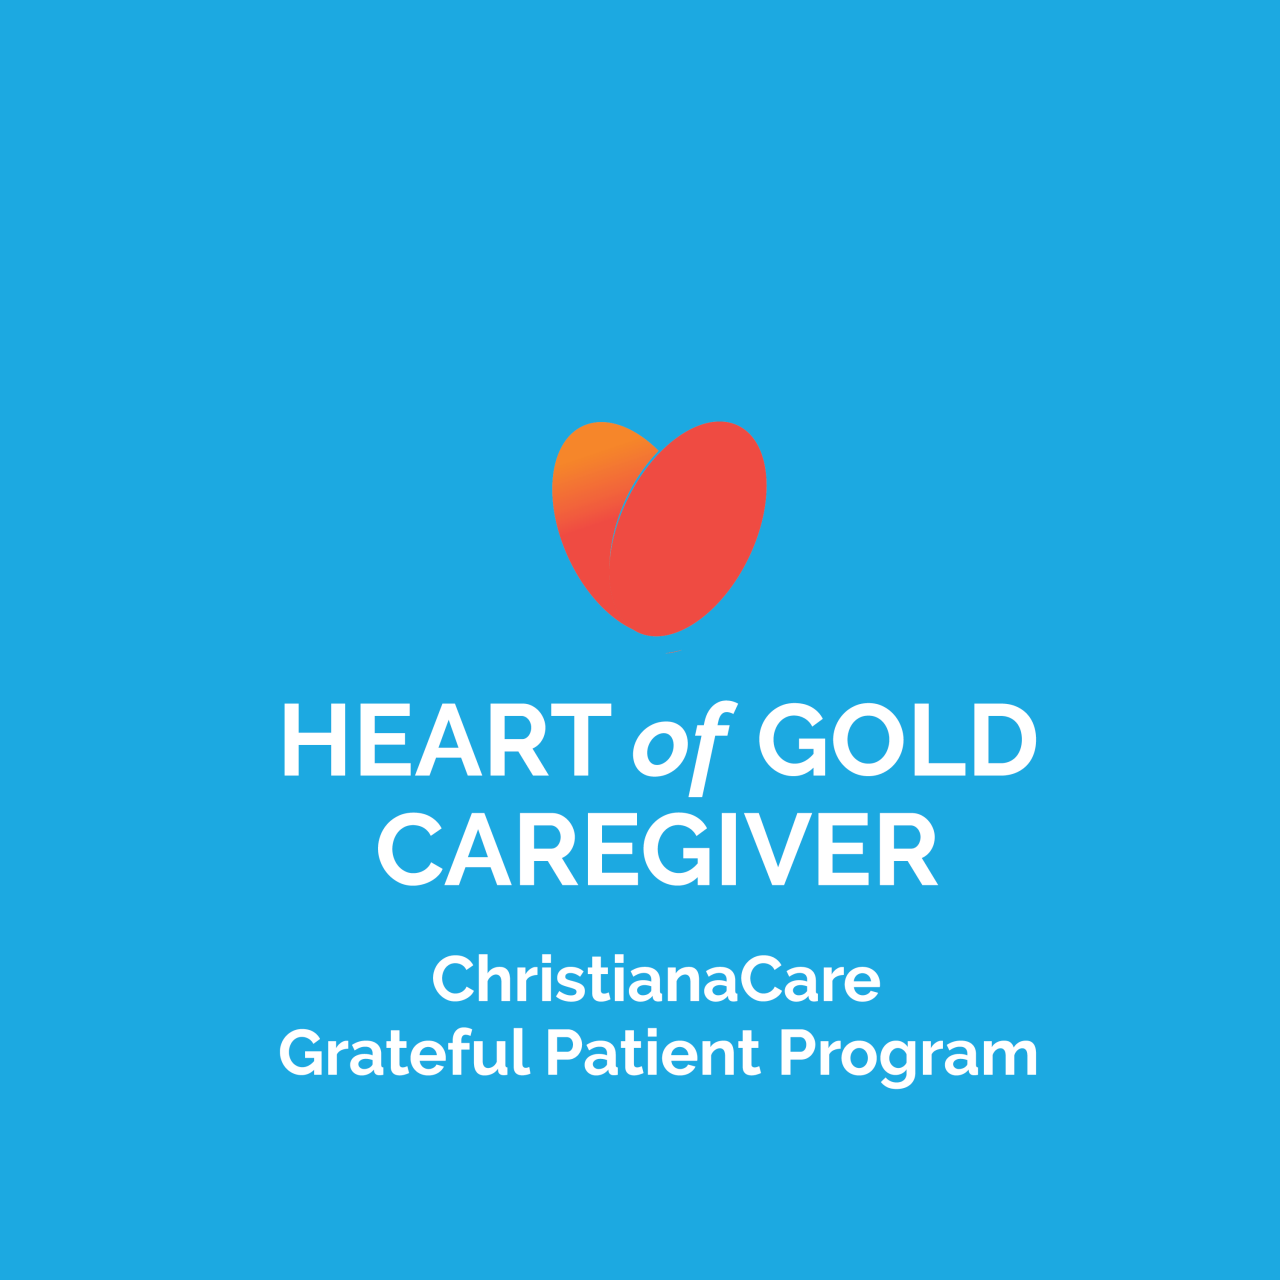 Logotipo de Patient Heart of Gold Caregiver, de pacientes agradecidos